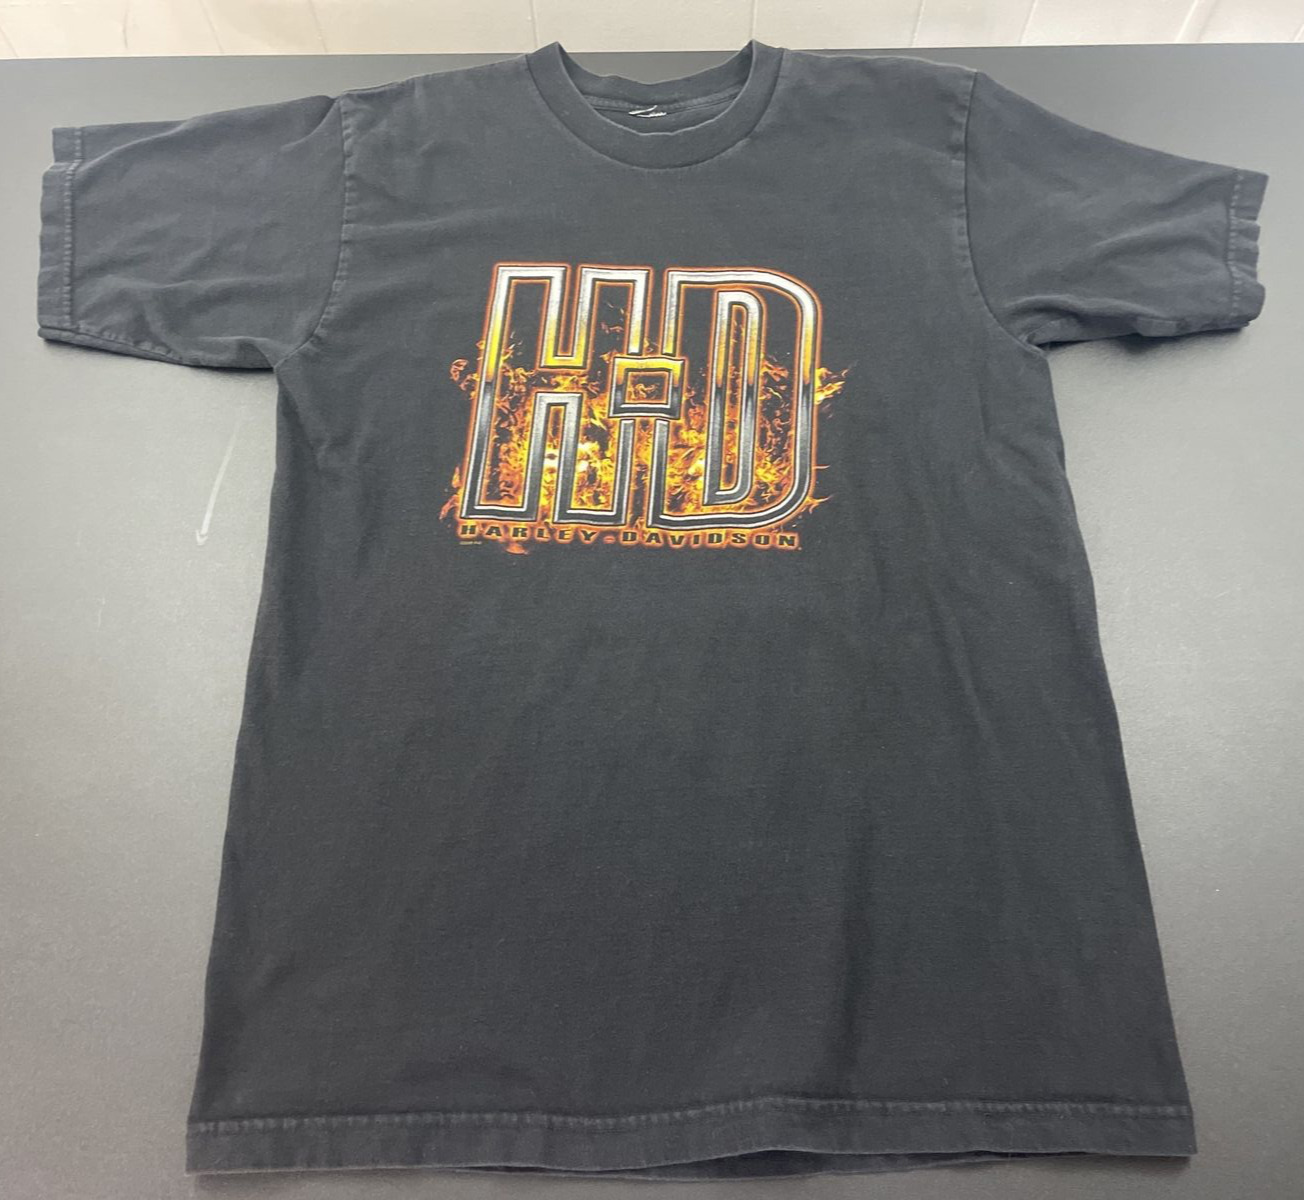 Harley-Davidson t-shirt - Stuart Florida